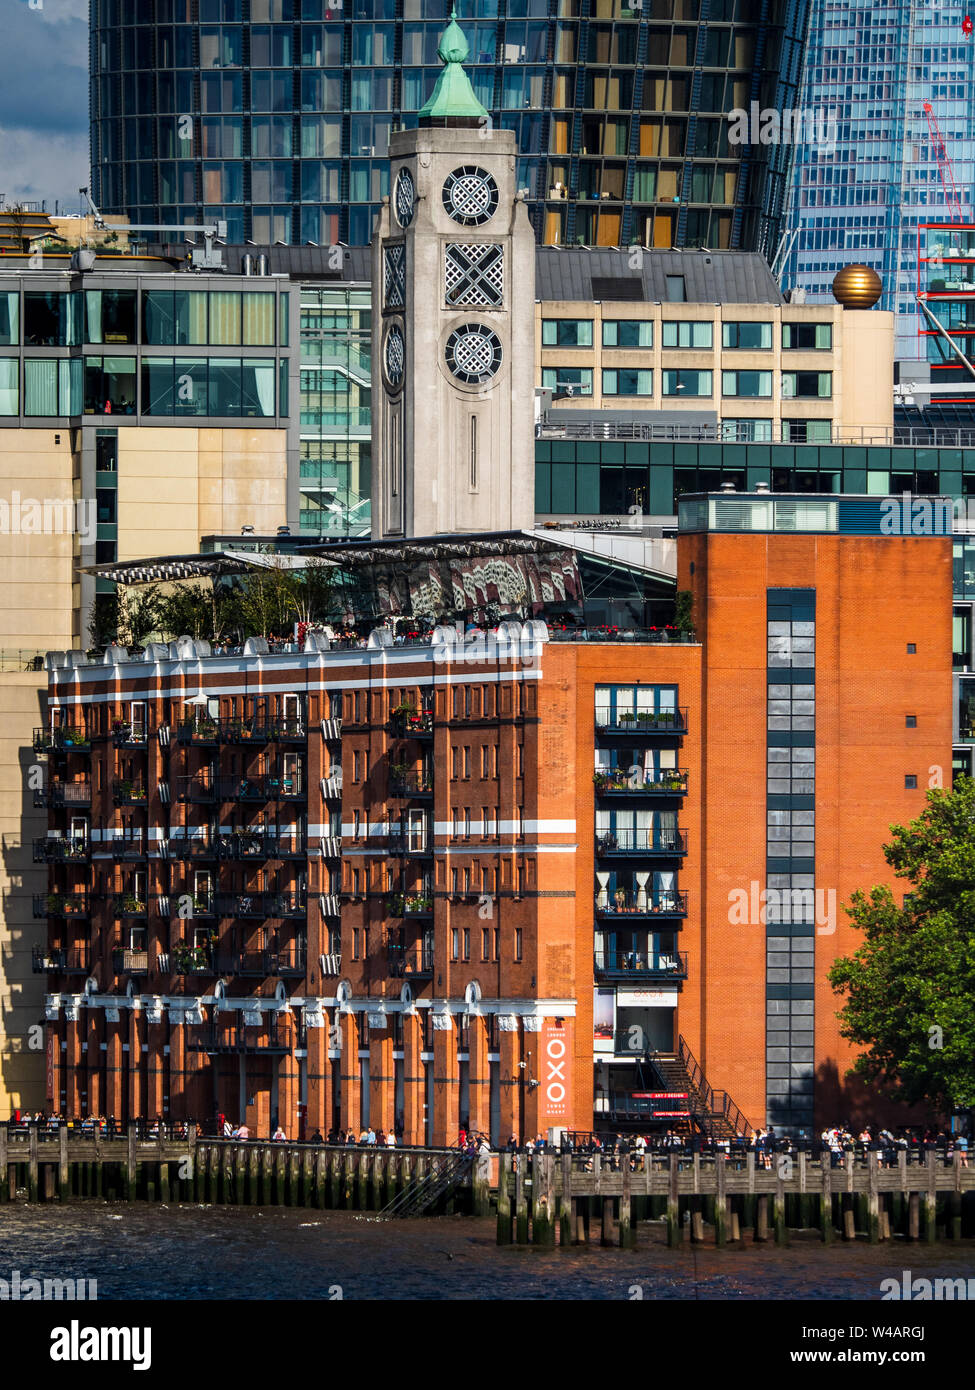 Oxo Tower London. Ursprünglich als Power Station in den späten C 19 Es im Art-déco-Stil von Architekt Albert Moore neu gestaltet wurde zwischen 1928-29 errichtet. Stockfoto